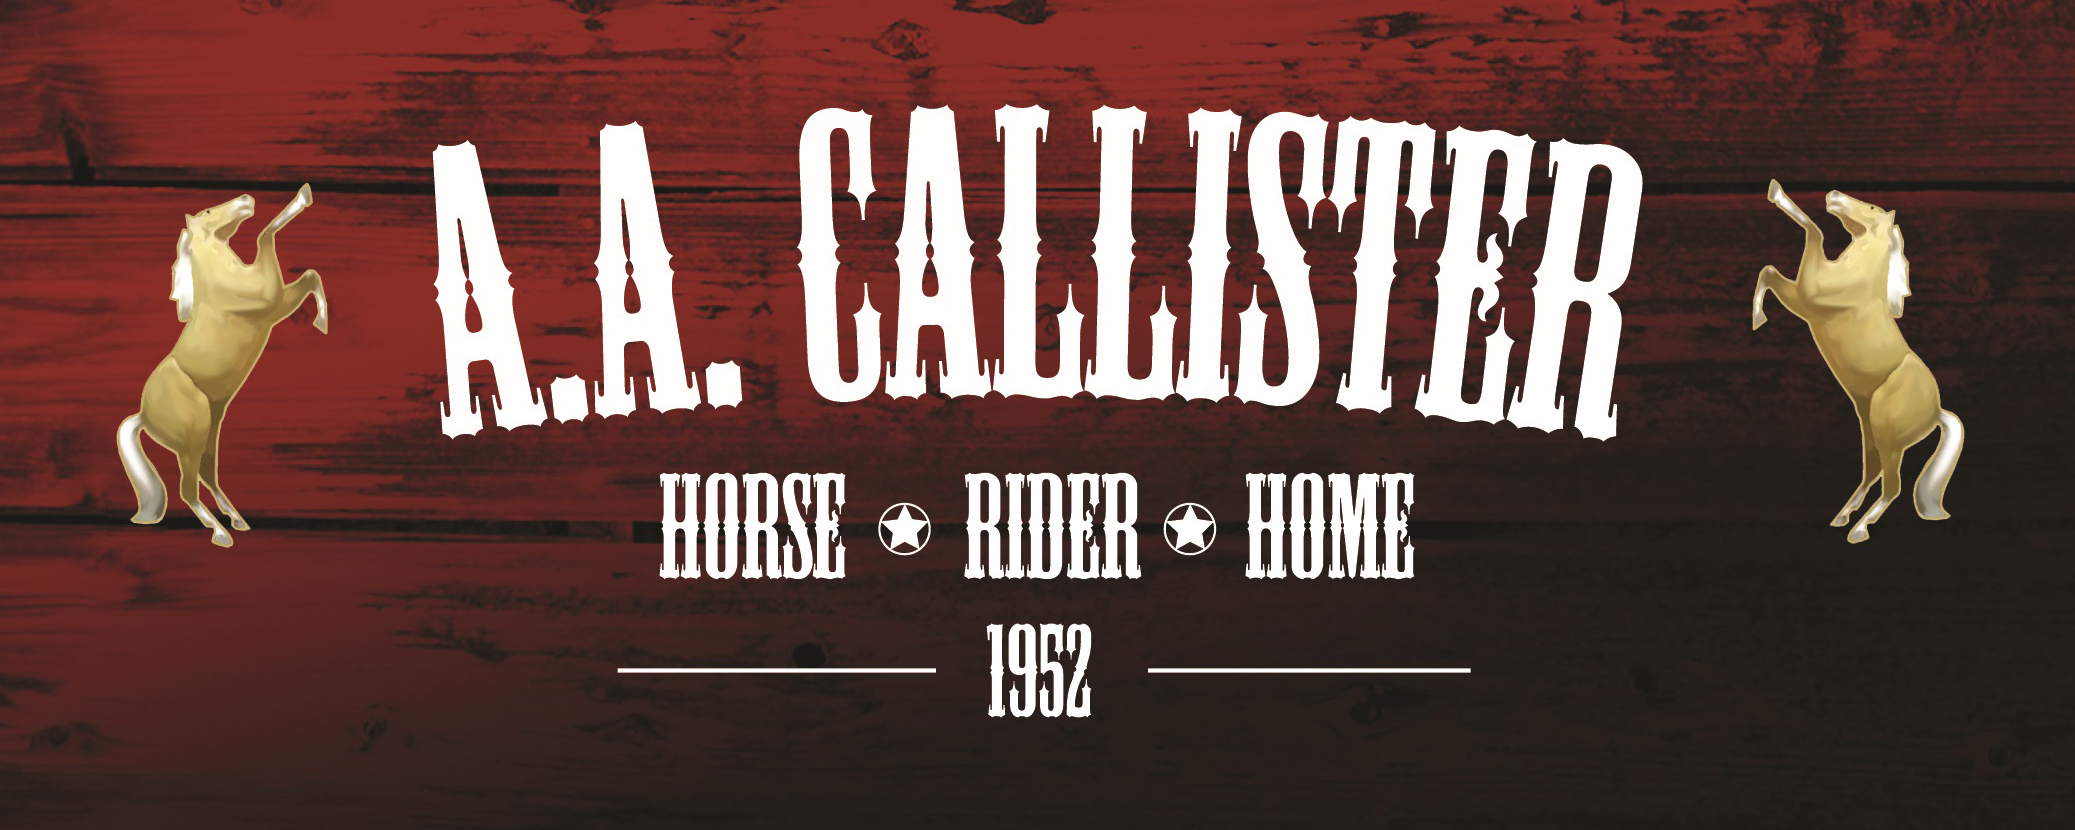 A.A. Callister